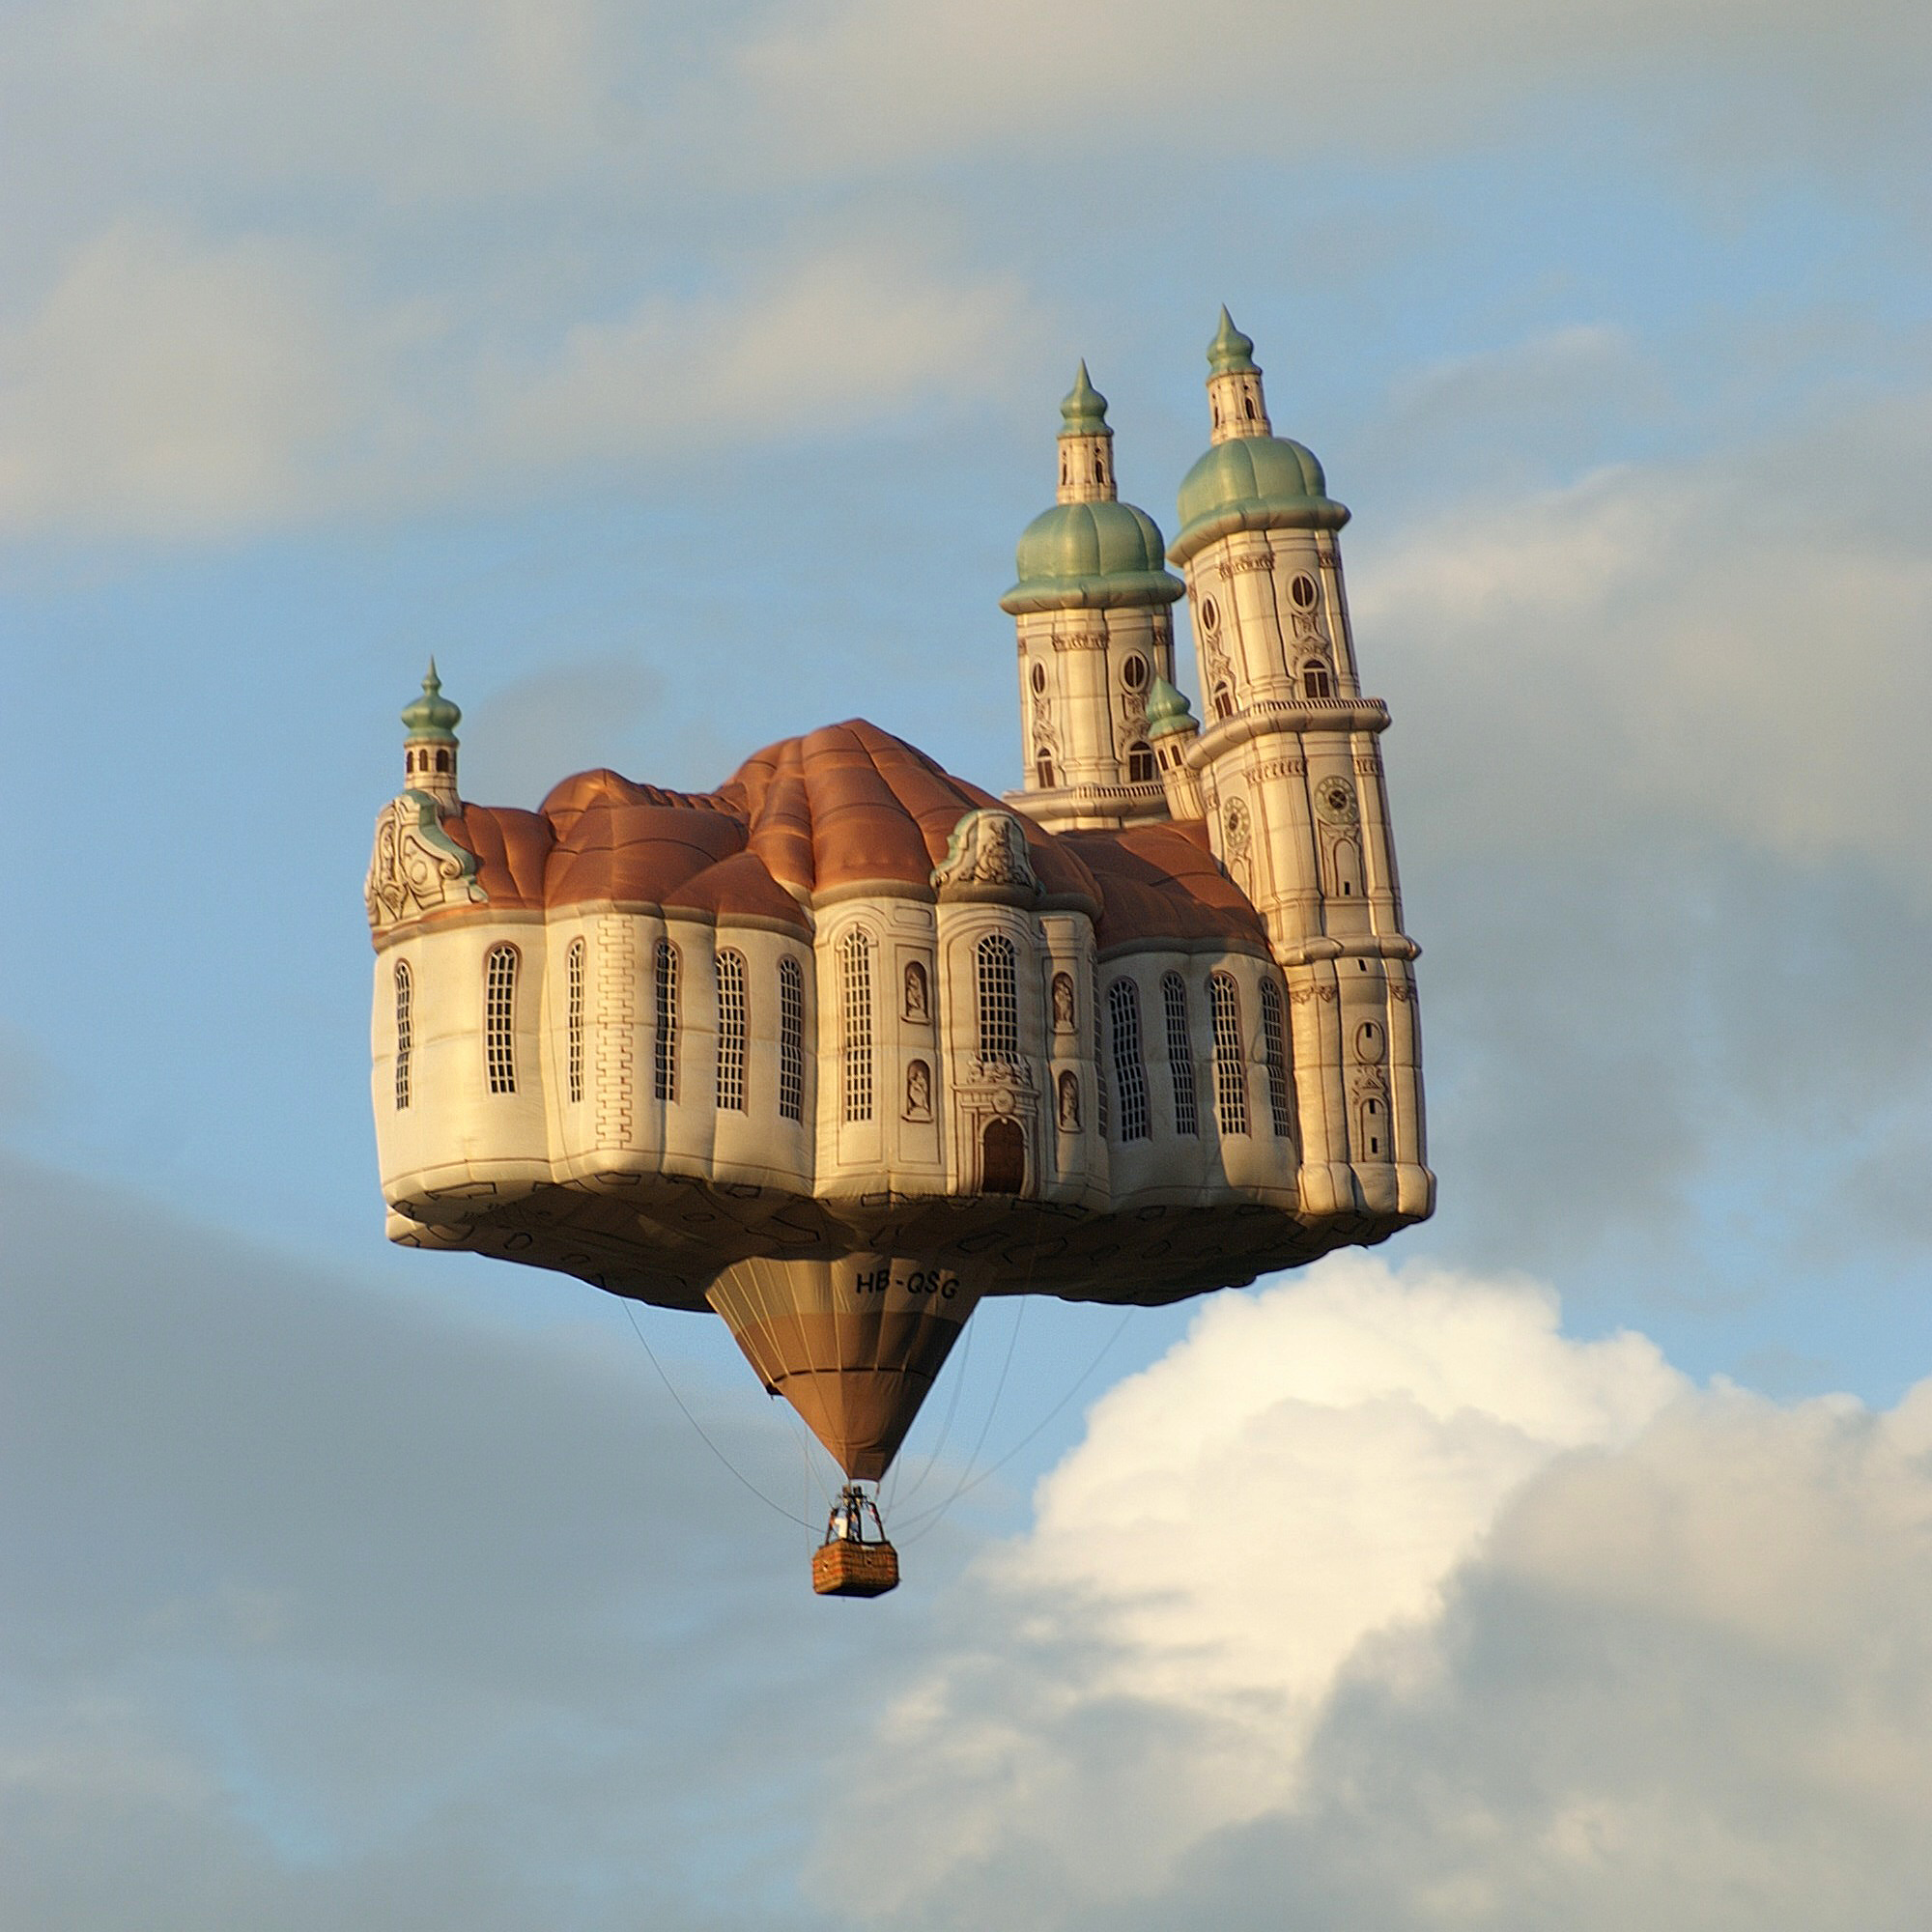 Còn đây là một khí cầu hình tòa lâu đài.